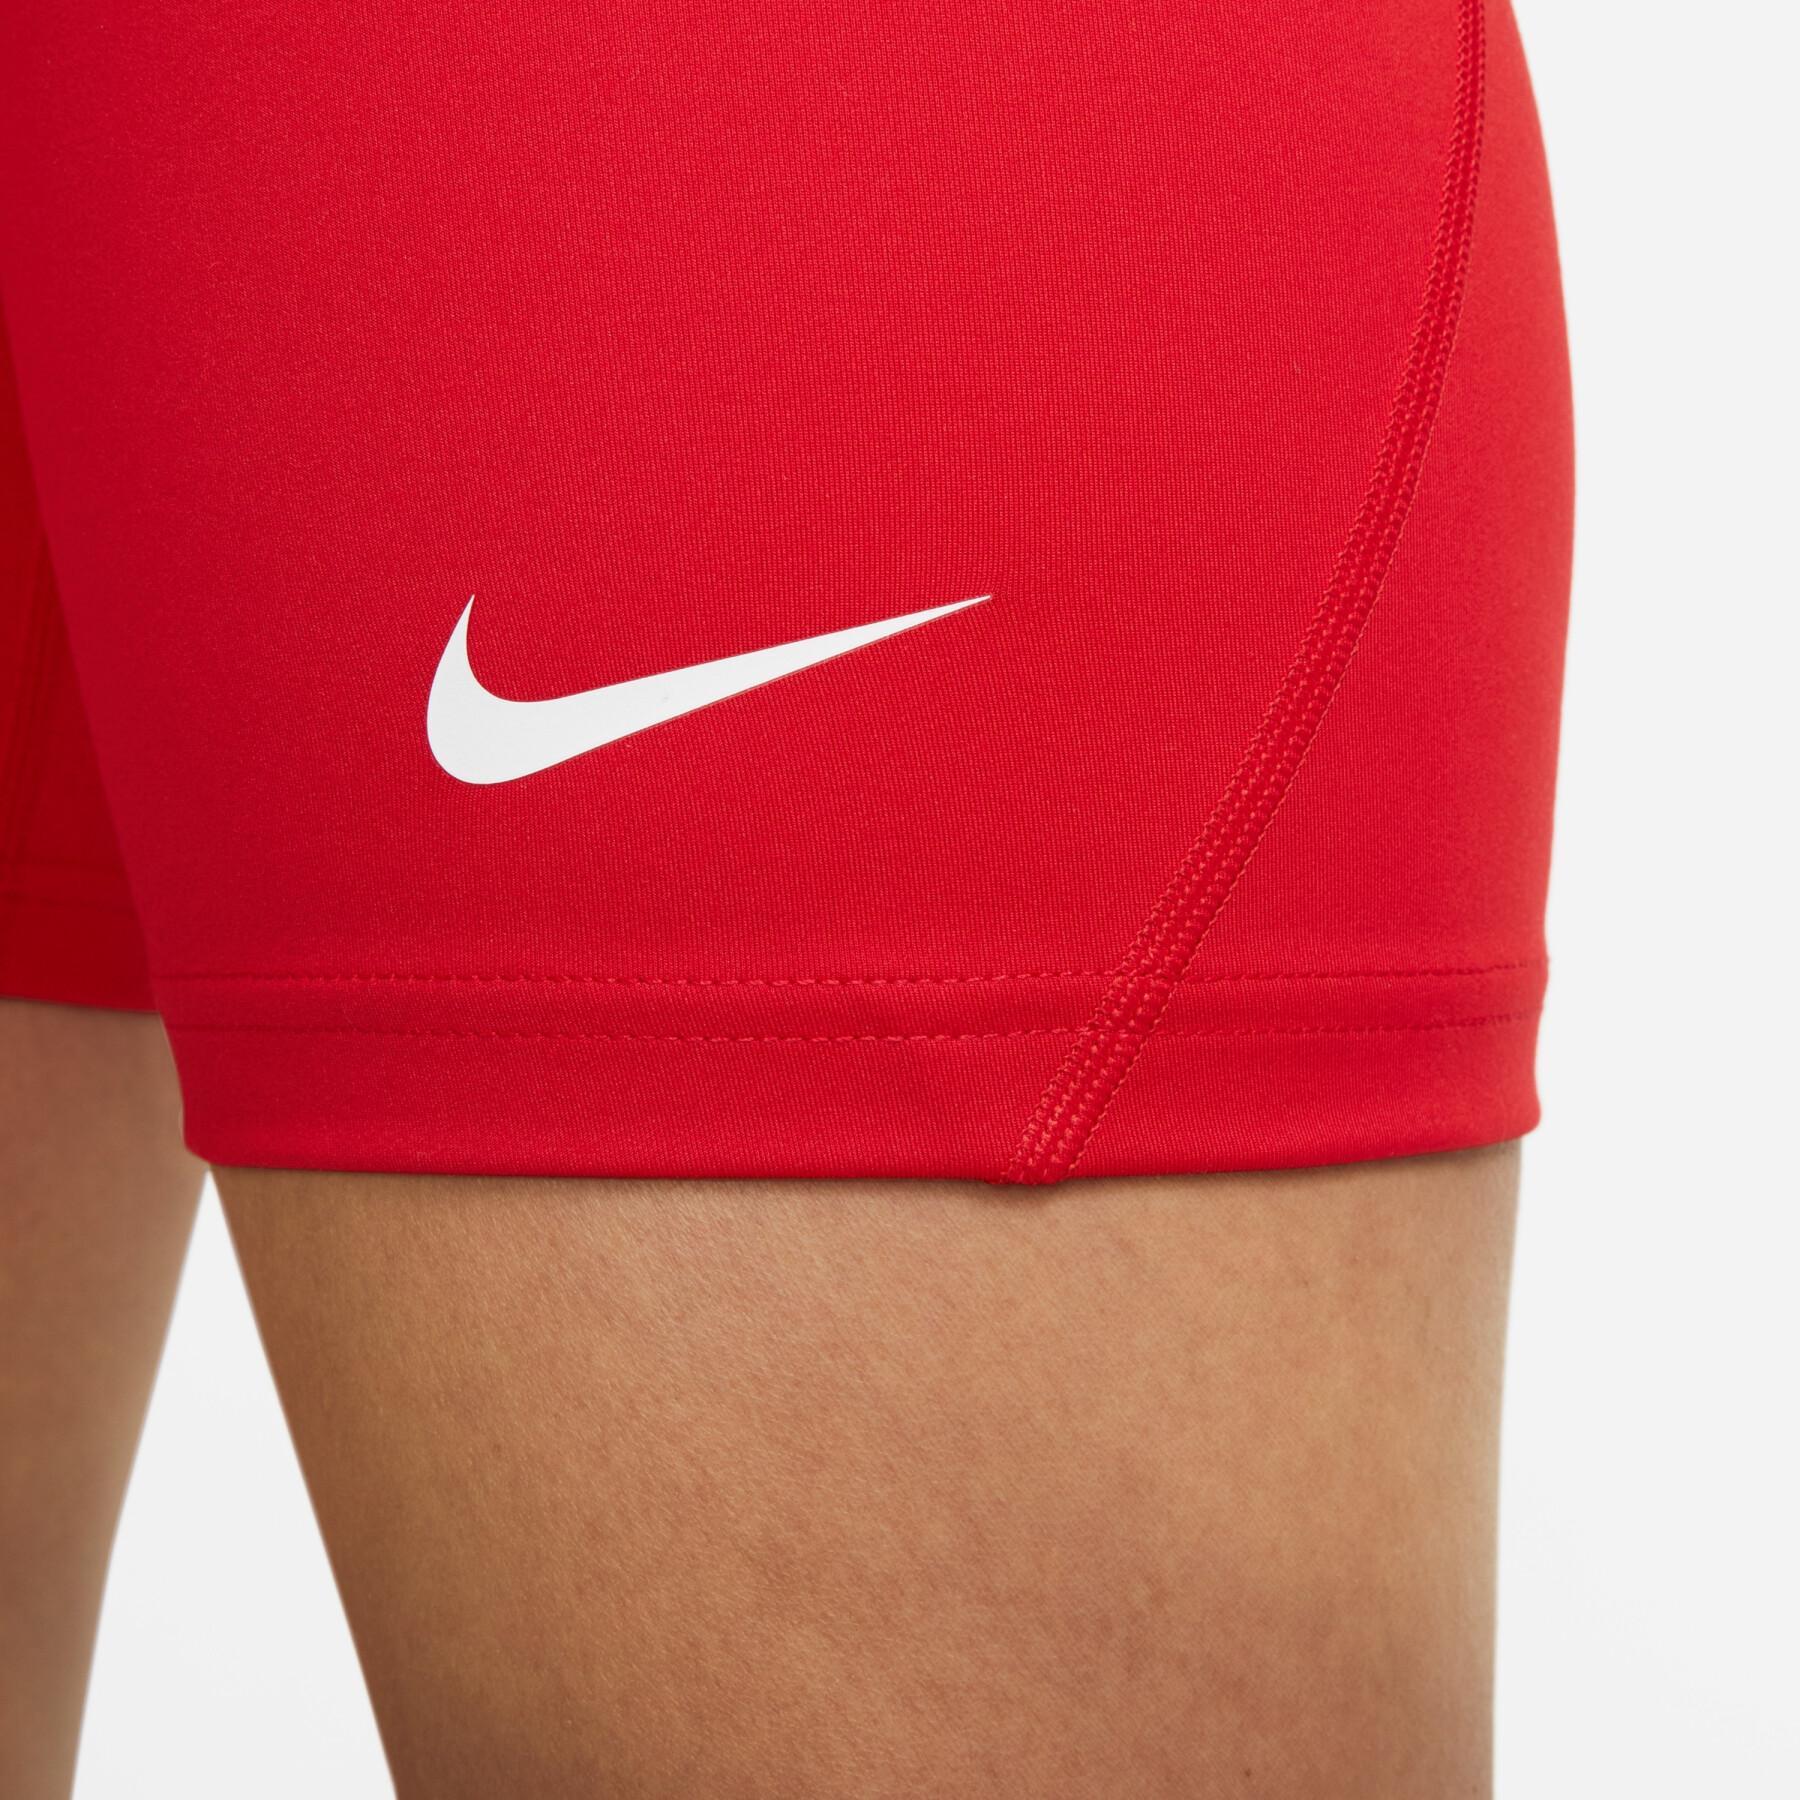 Women's shorts Nike Dri-FIT Strike NP